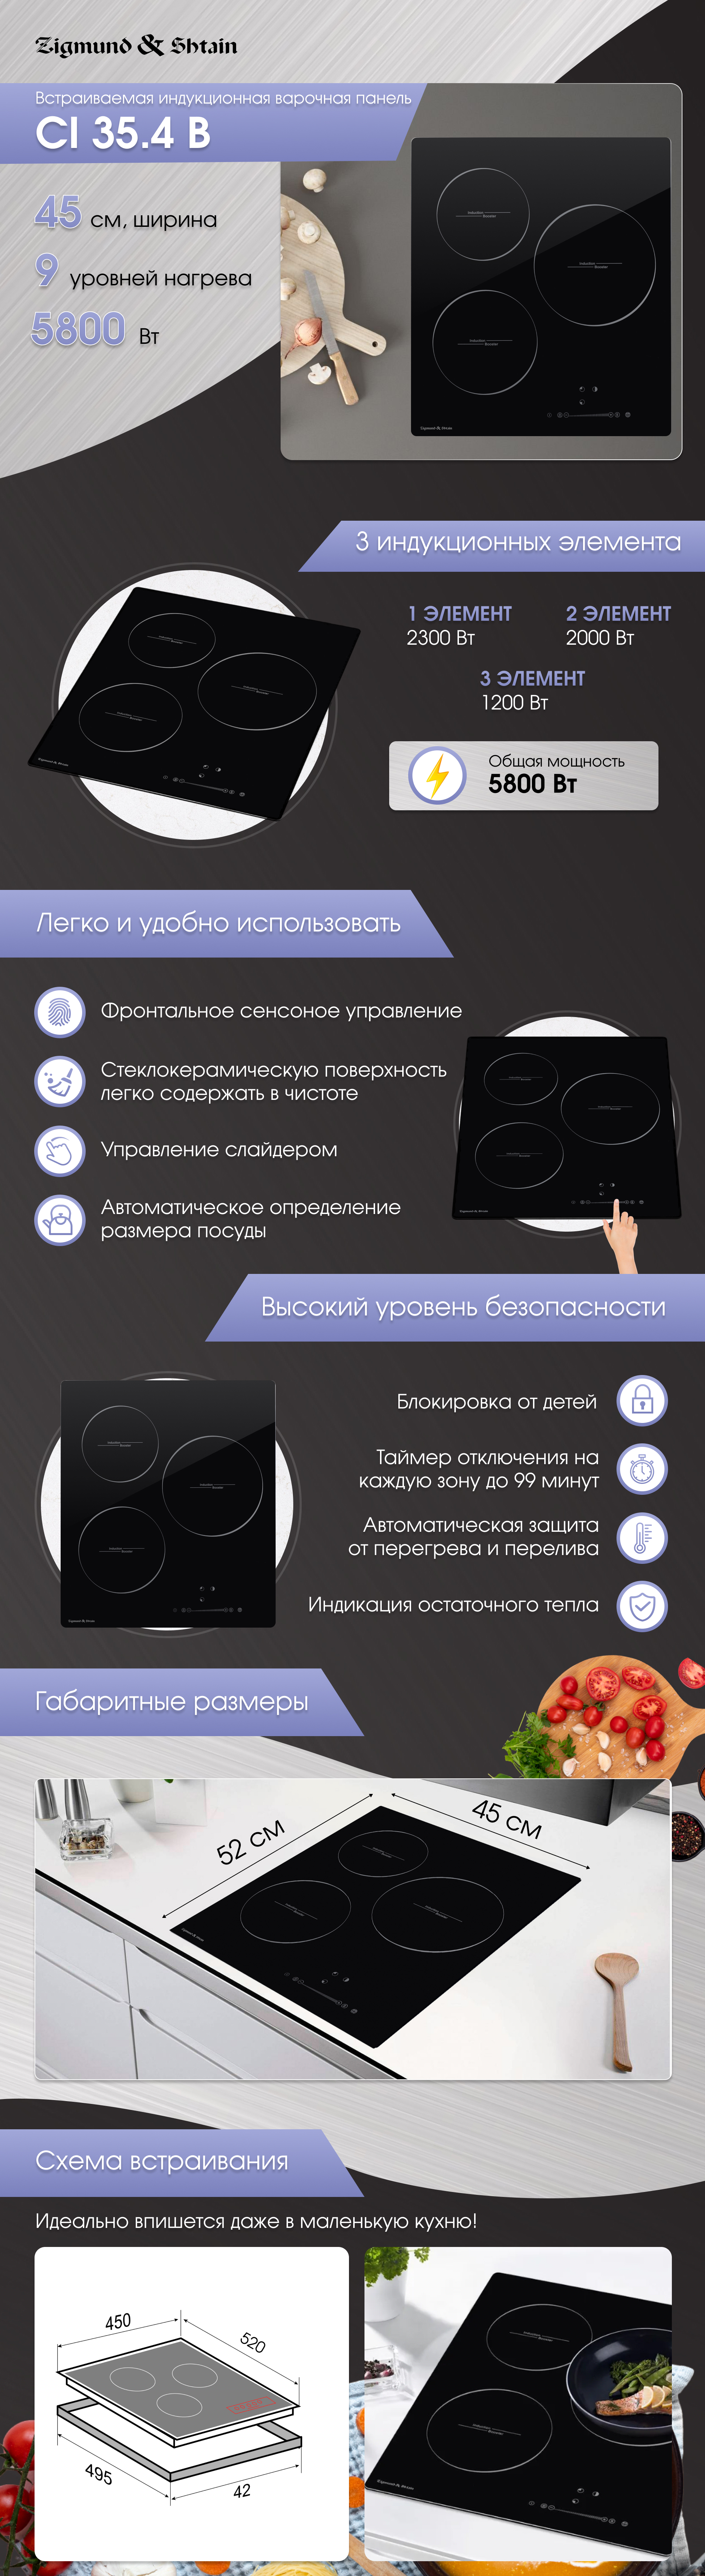 Варочная панель электрическая Zigmund & Shtain CI 35.4 B индукционная купить в Красноярске